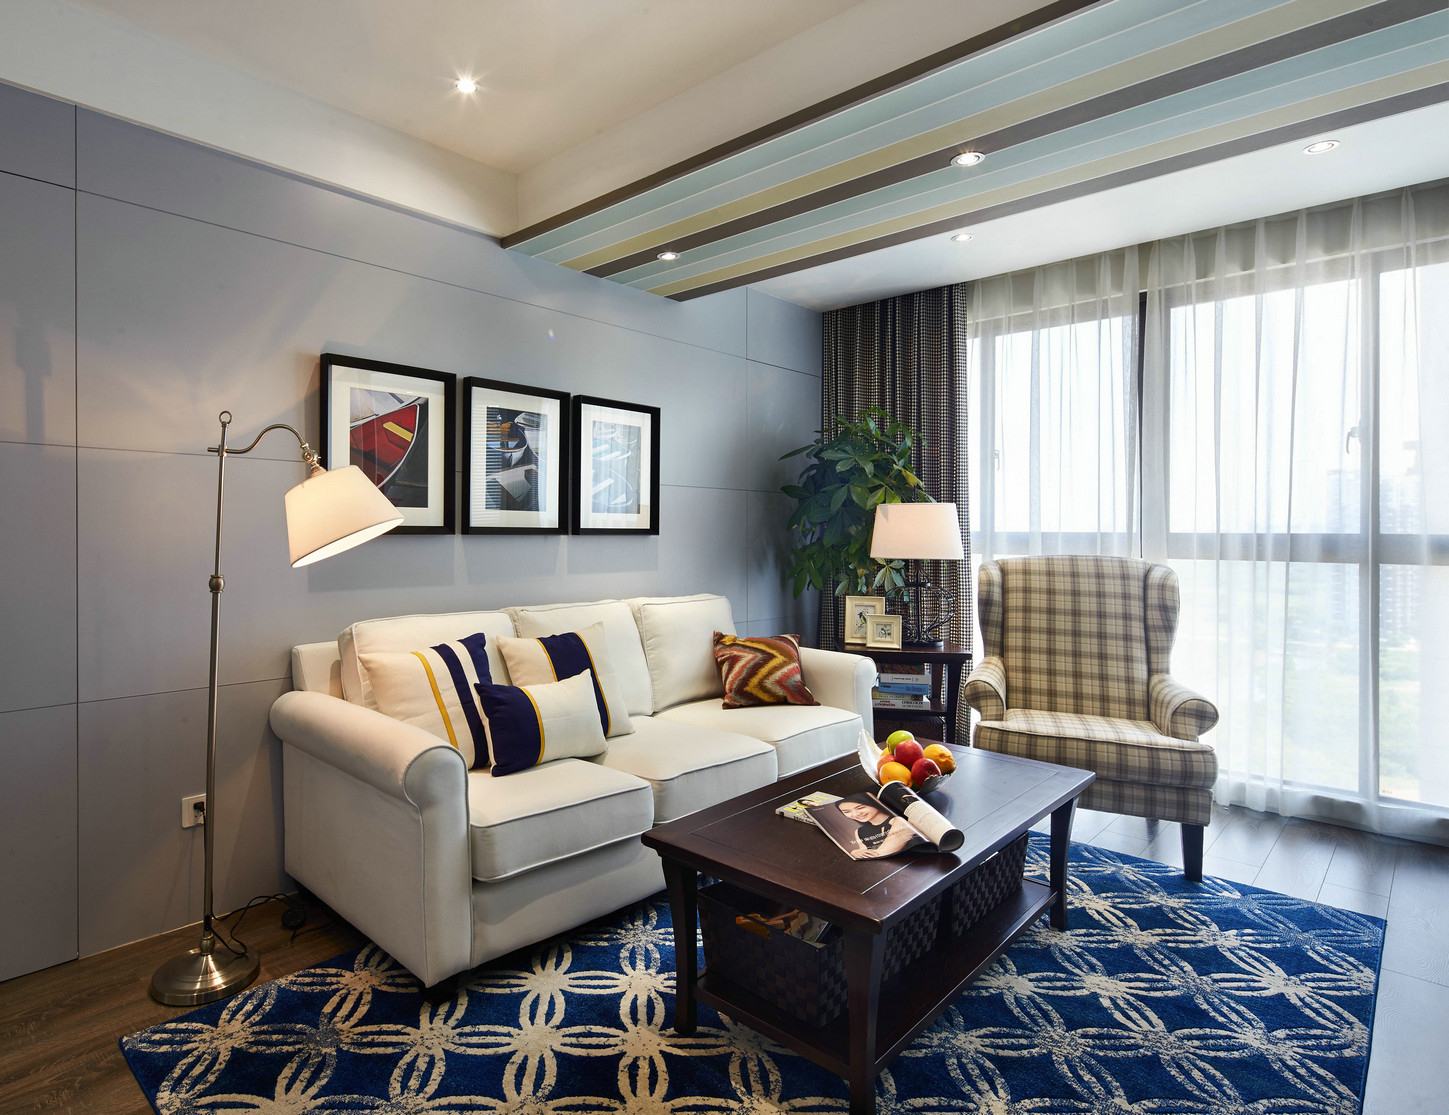 170平 混搭 客厅图片来自西安紫苹果装饰工程有限公司在170平混搭的分享